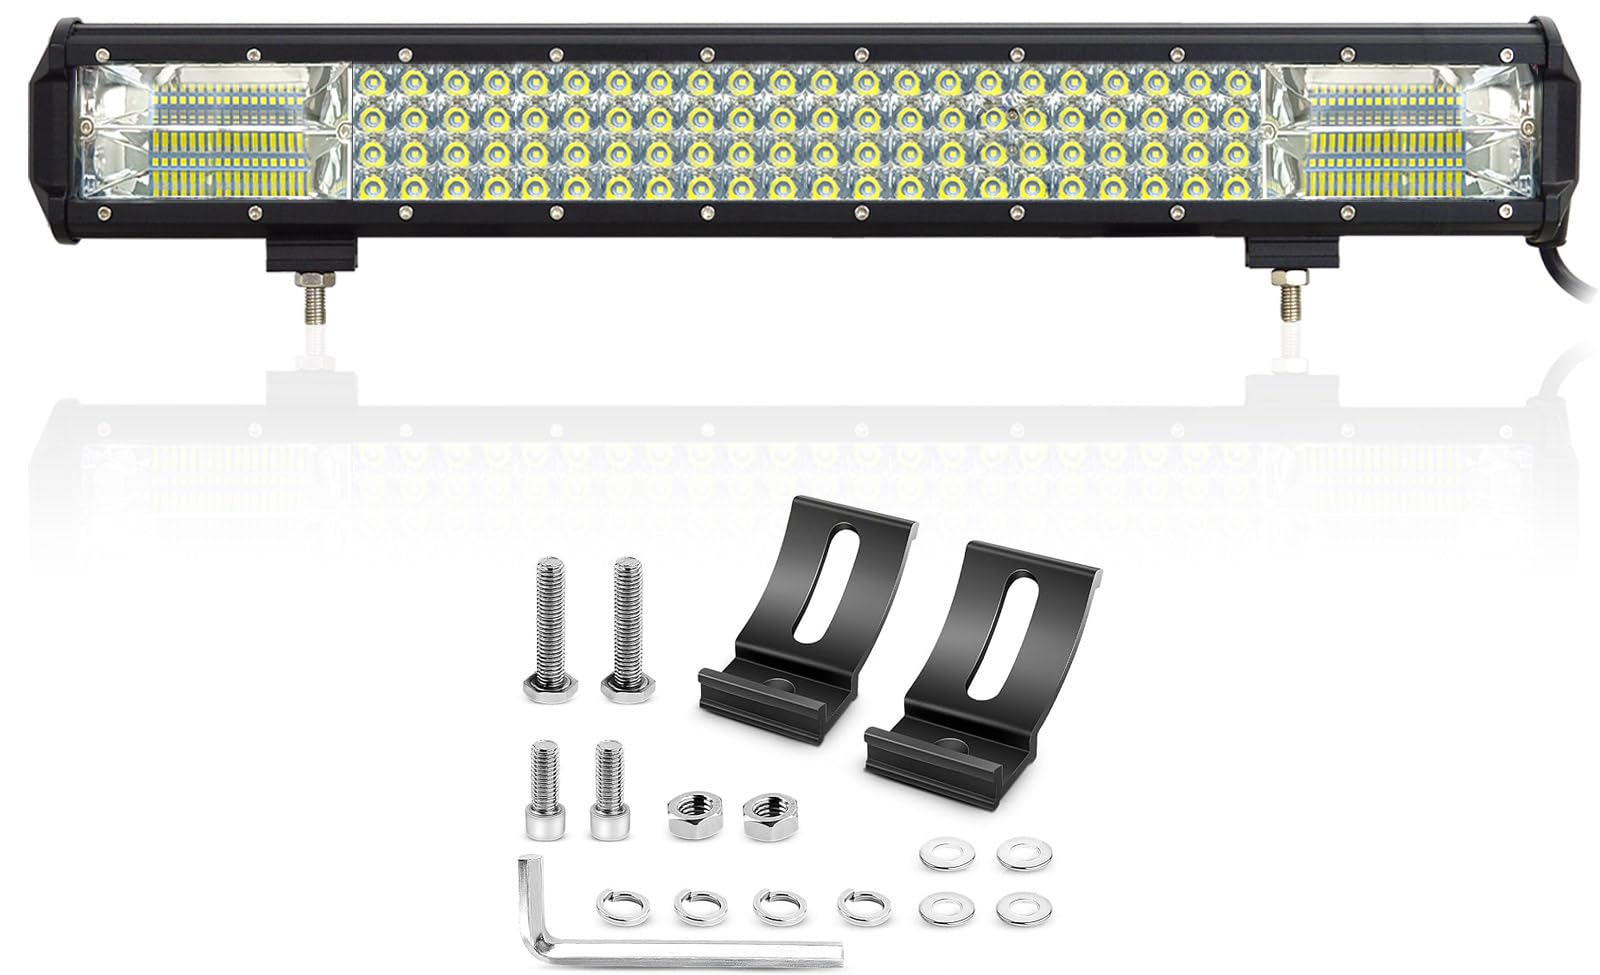 Willpower 510W LED Arbeitsscheinwerfer Bar Spot Flood Combo 20 Zoll Reflektor Offroad Scheinwerfer Arbeitslicht – 4 Reihe LED Zusatzscheinwerfer Leuchtbalken für UTV ATV SUV 12V 24V von Willpower